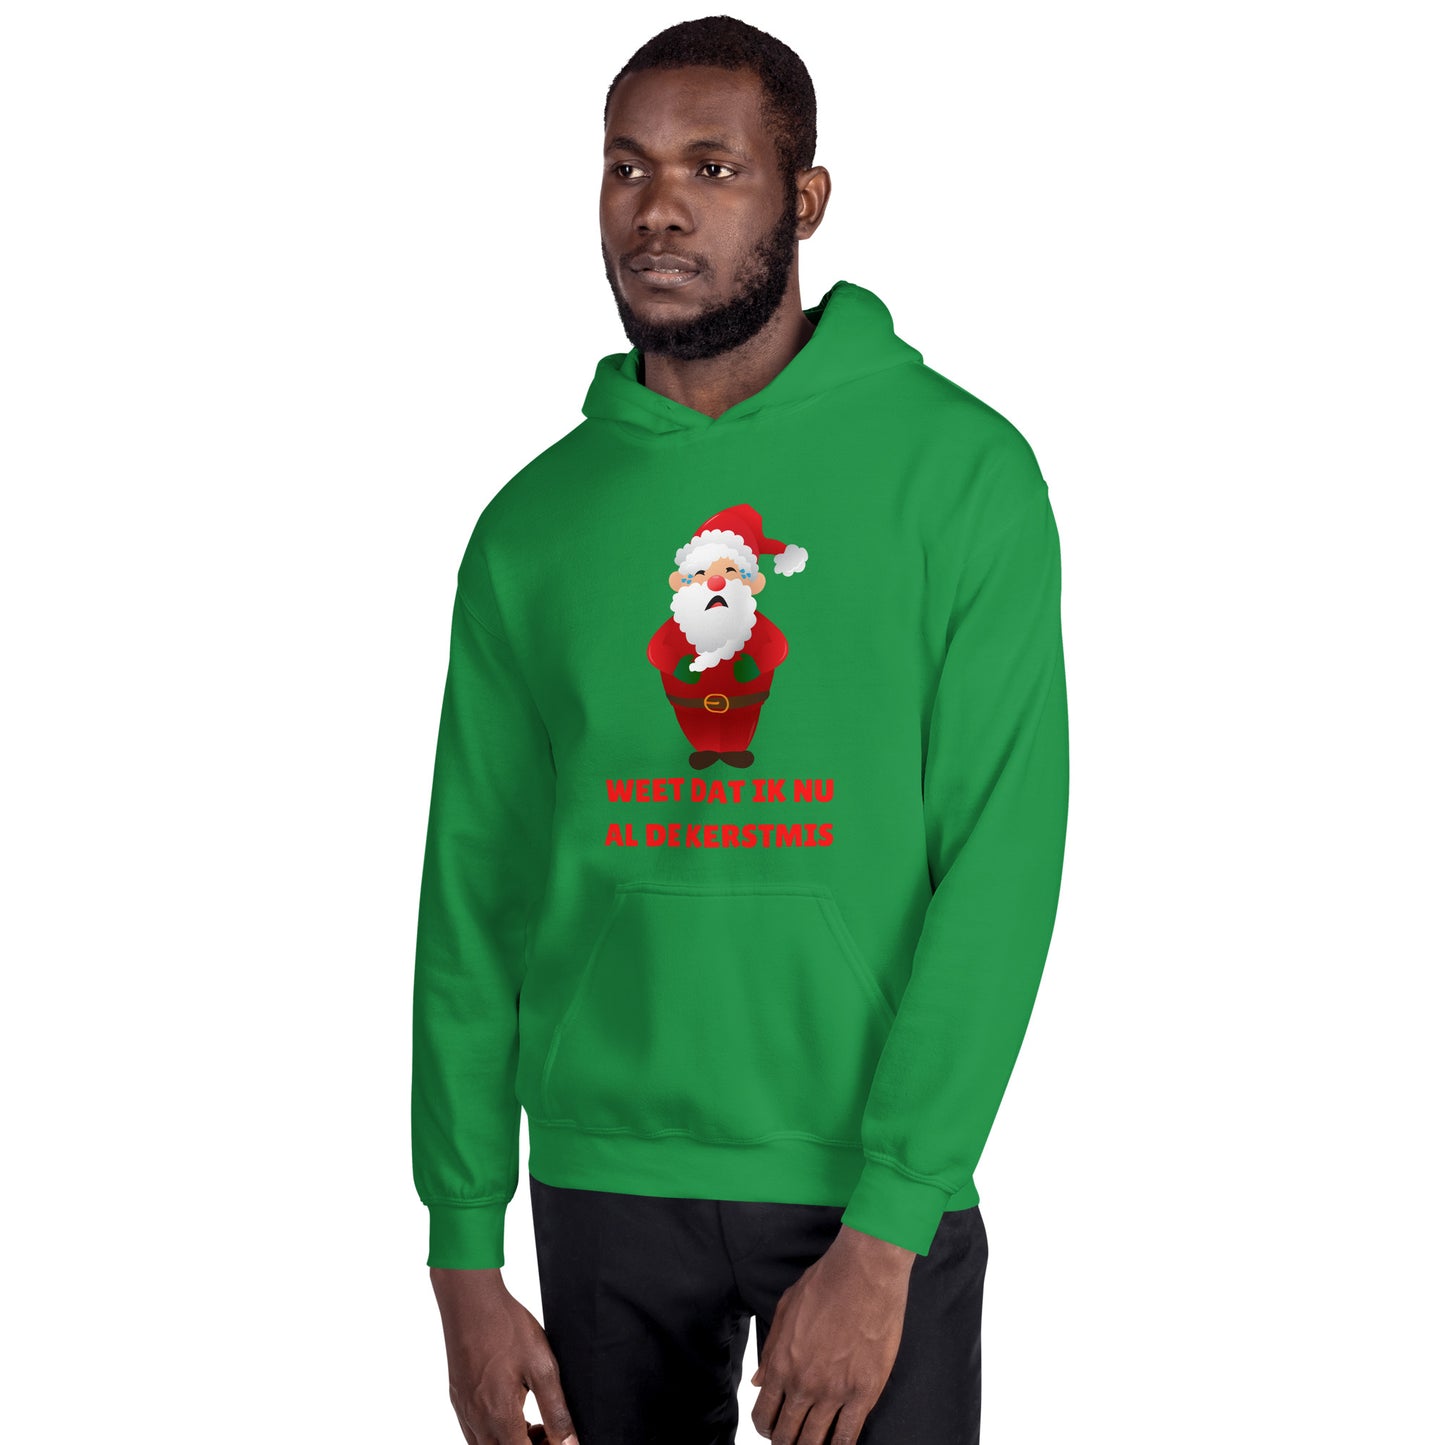 Weet Dat Ik Nu Al De Kerstmis Uniseks hoodie